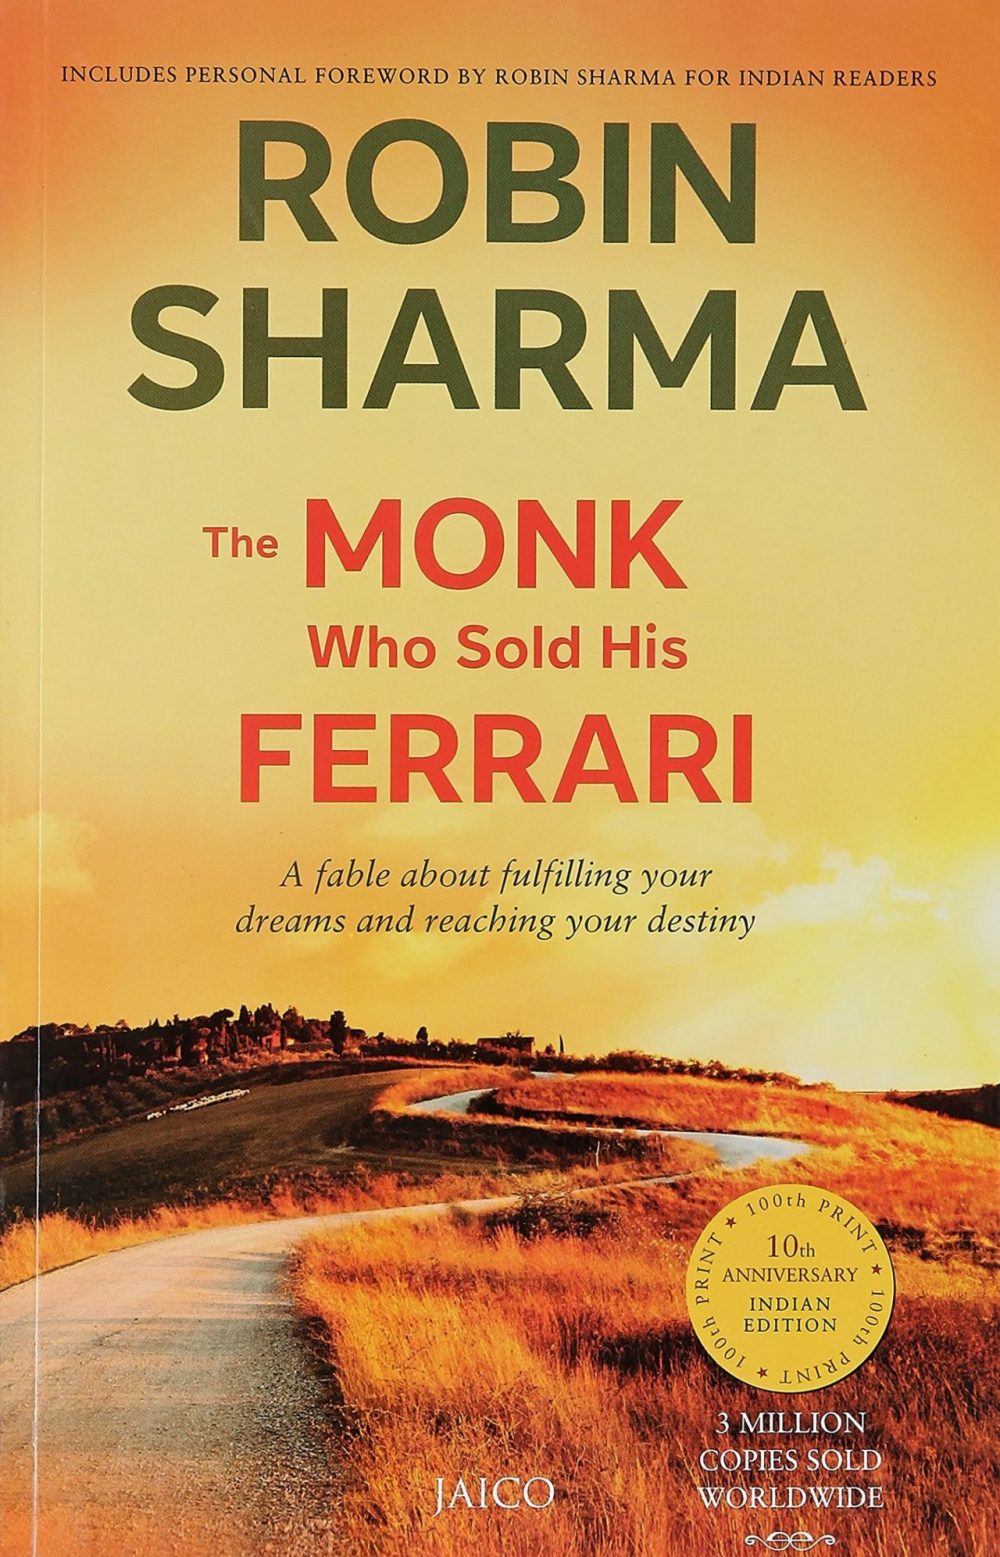 Bìa cuốn sách làm nên tên tuổi của Robin Sharma